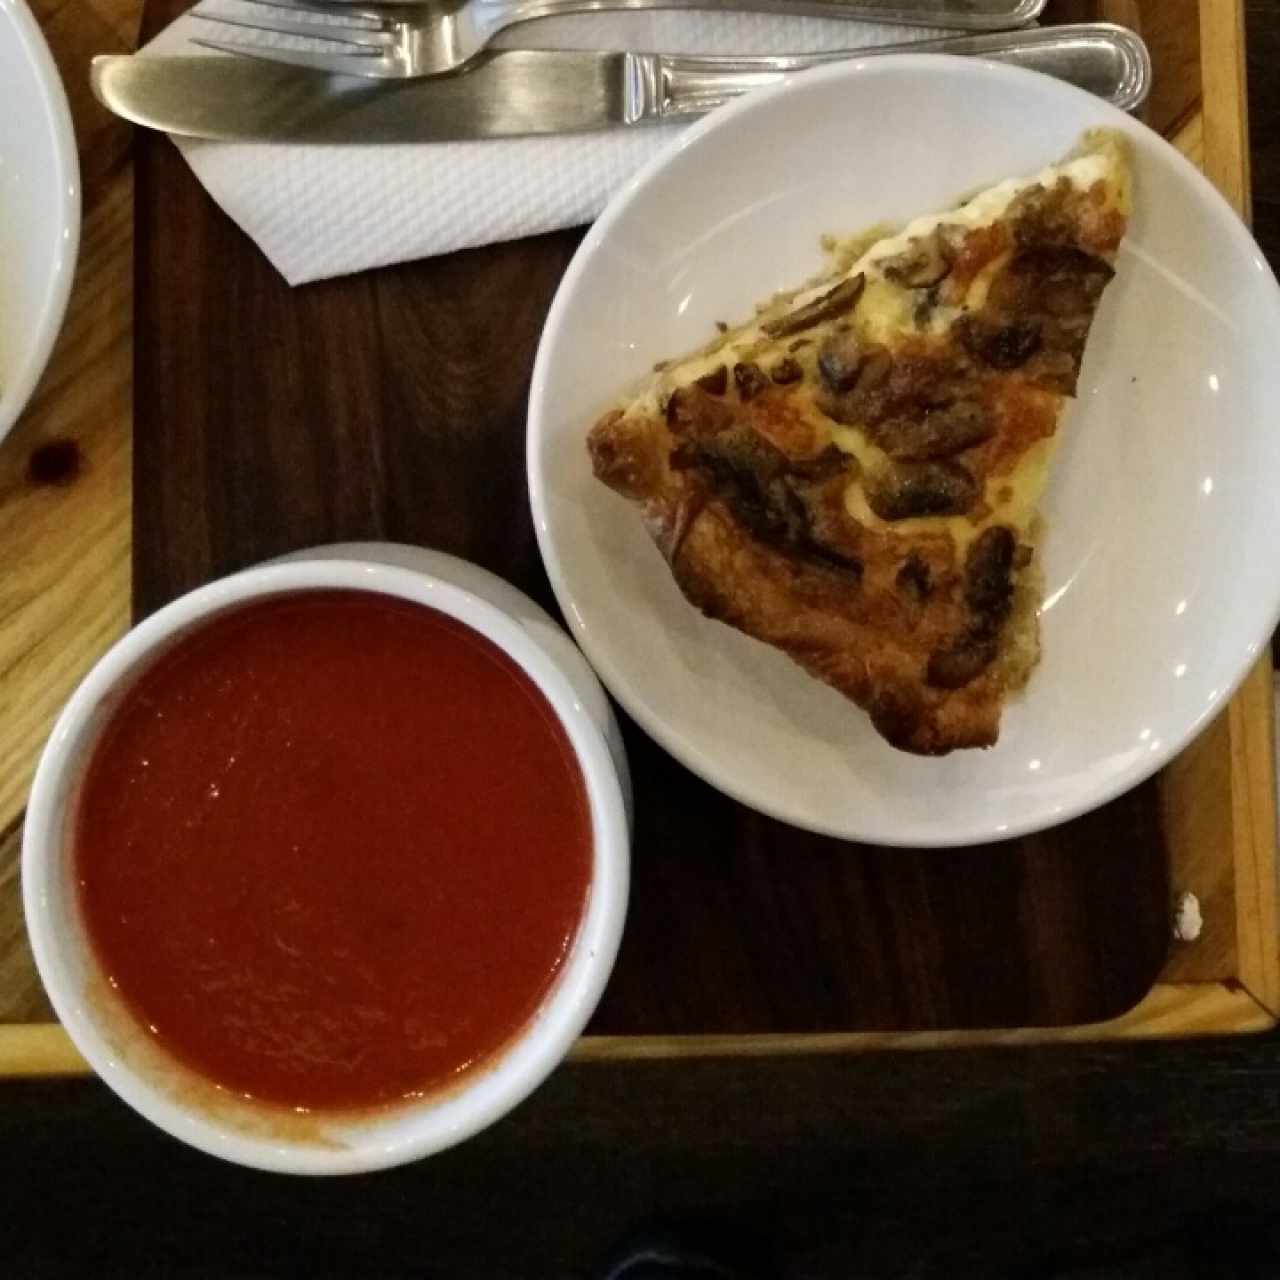 Sopa de tomate y Quiche de hongos con cebolla caramelizada